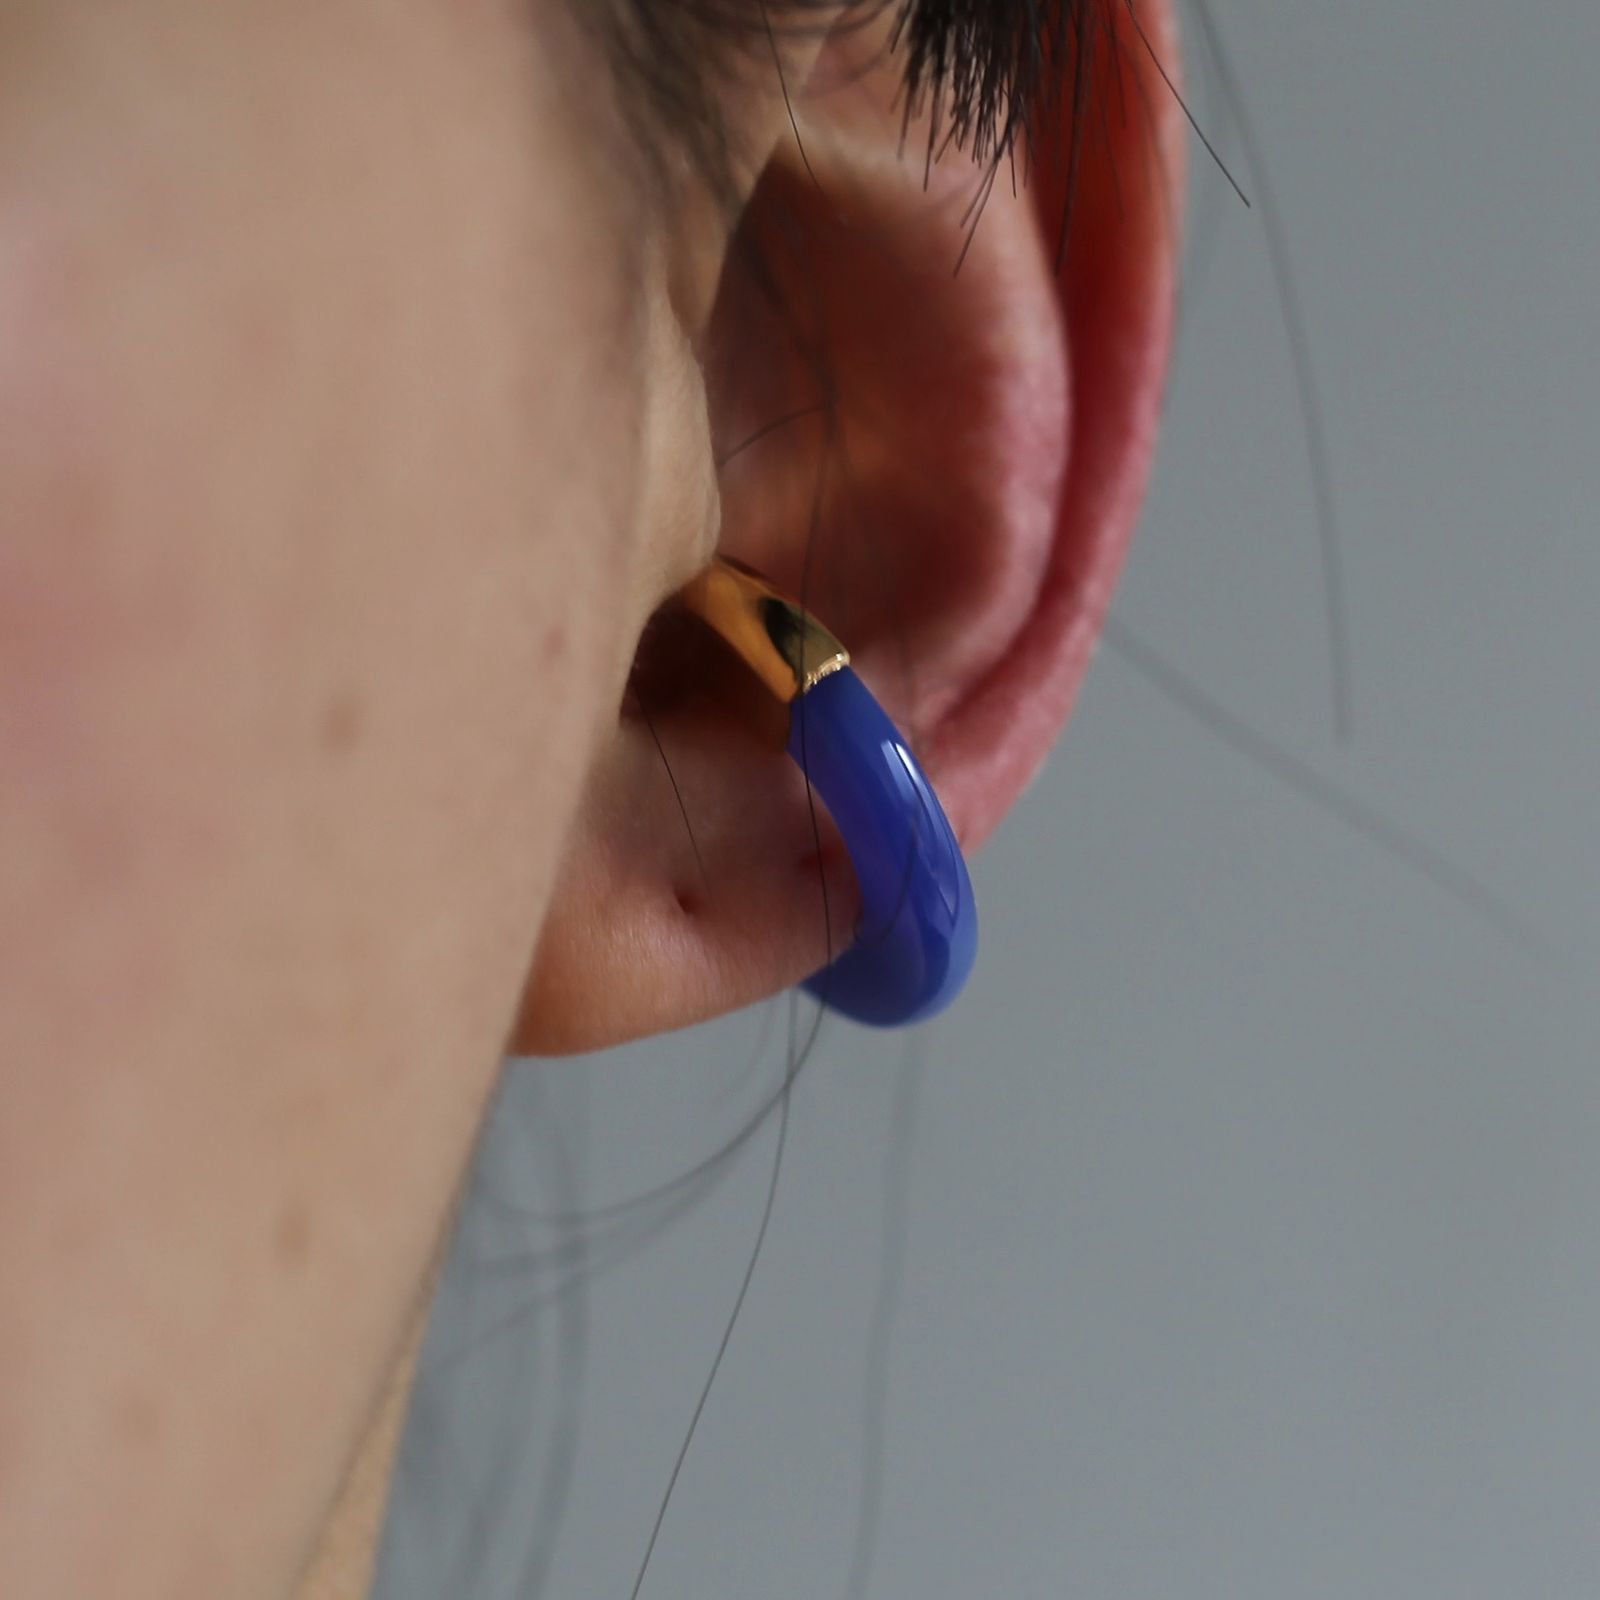 PREEK - 【残り一点】Ukishima Blue Agate Ear Cuff(片耳用